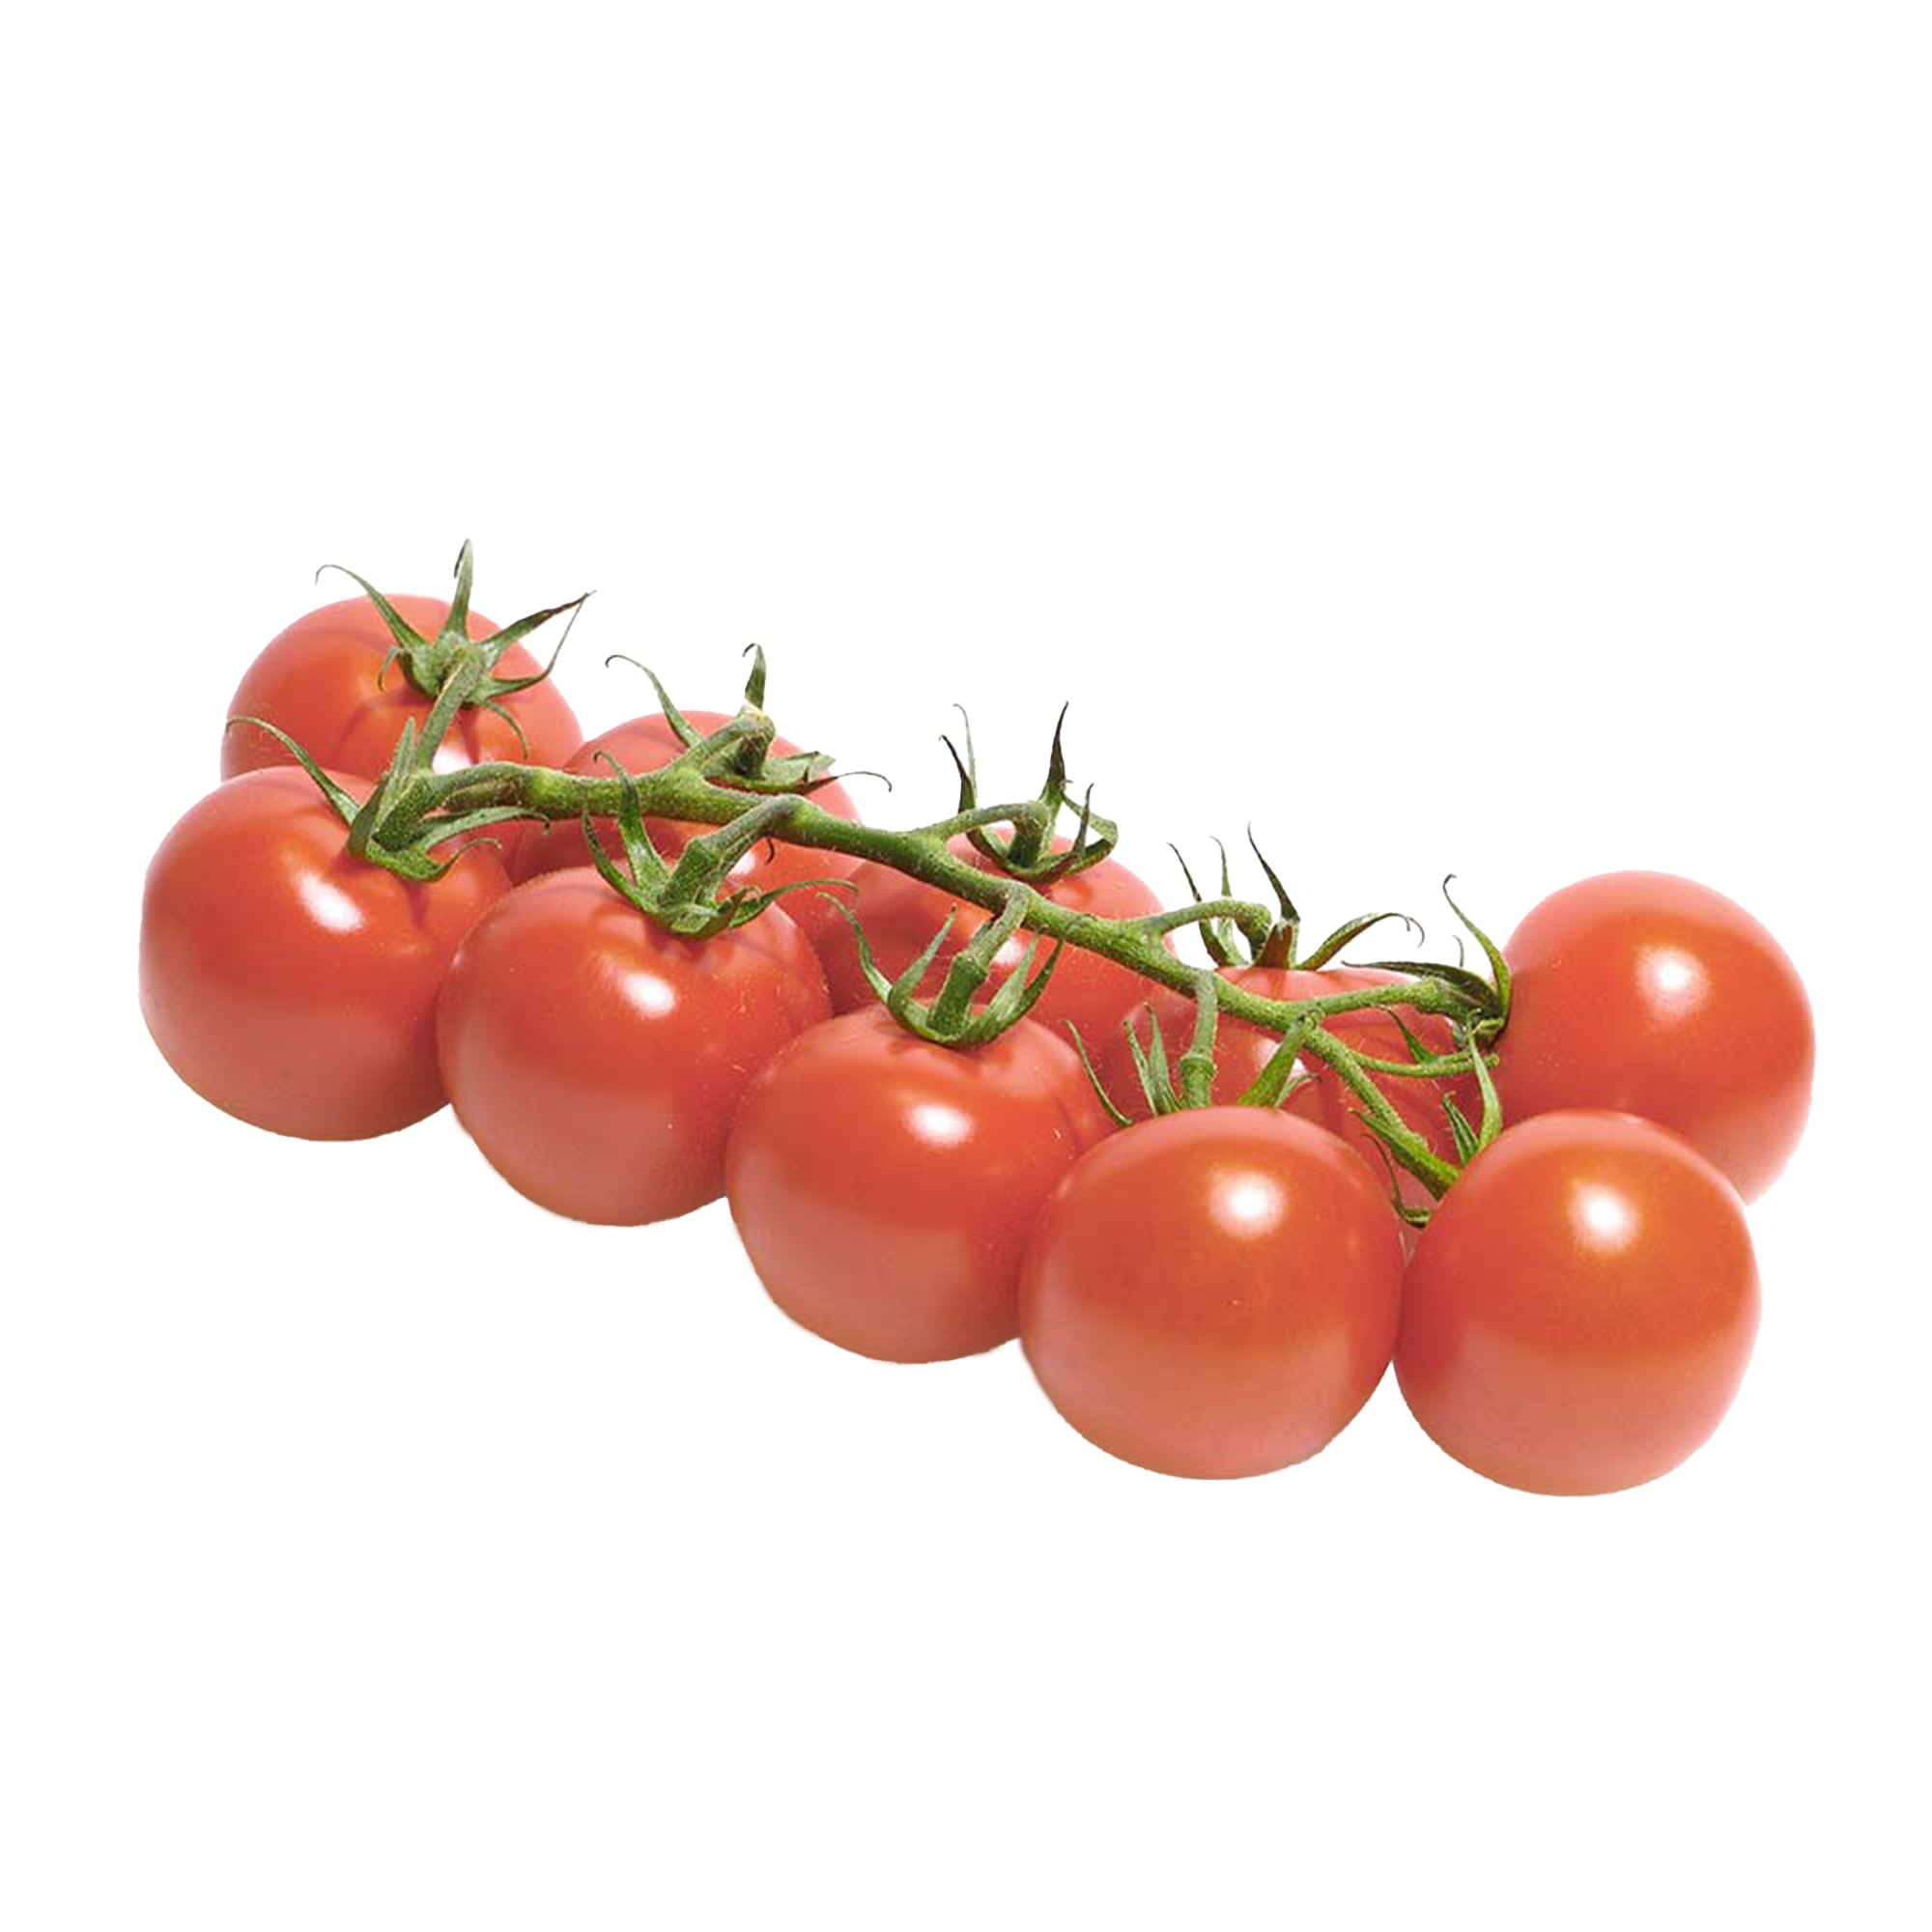 Tomato plants "Sugar Grape"